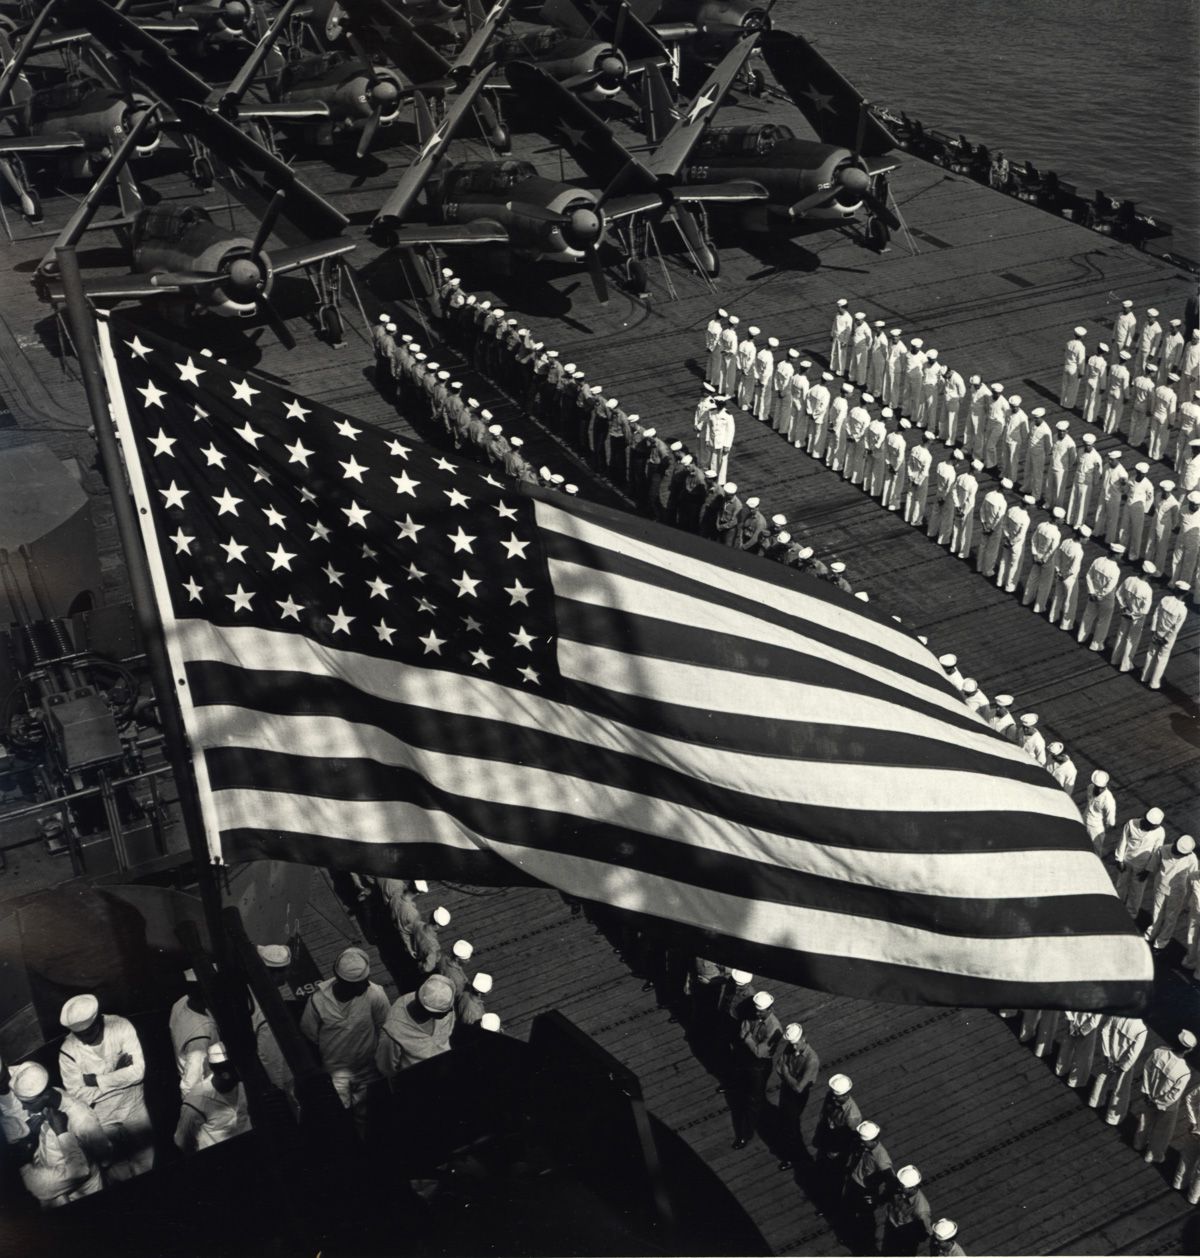 US Navy WW2